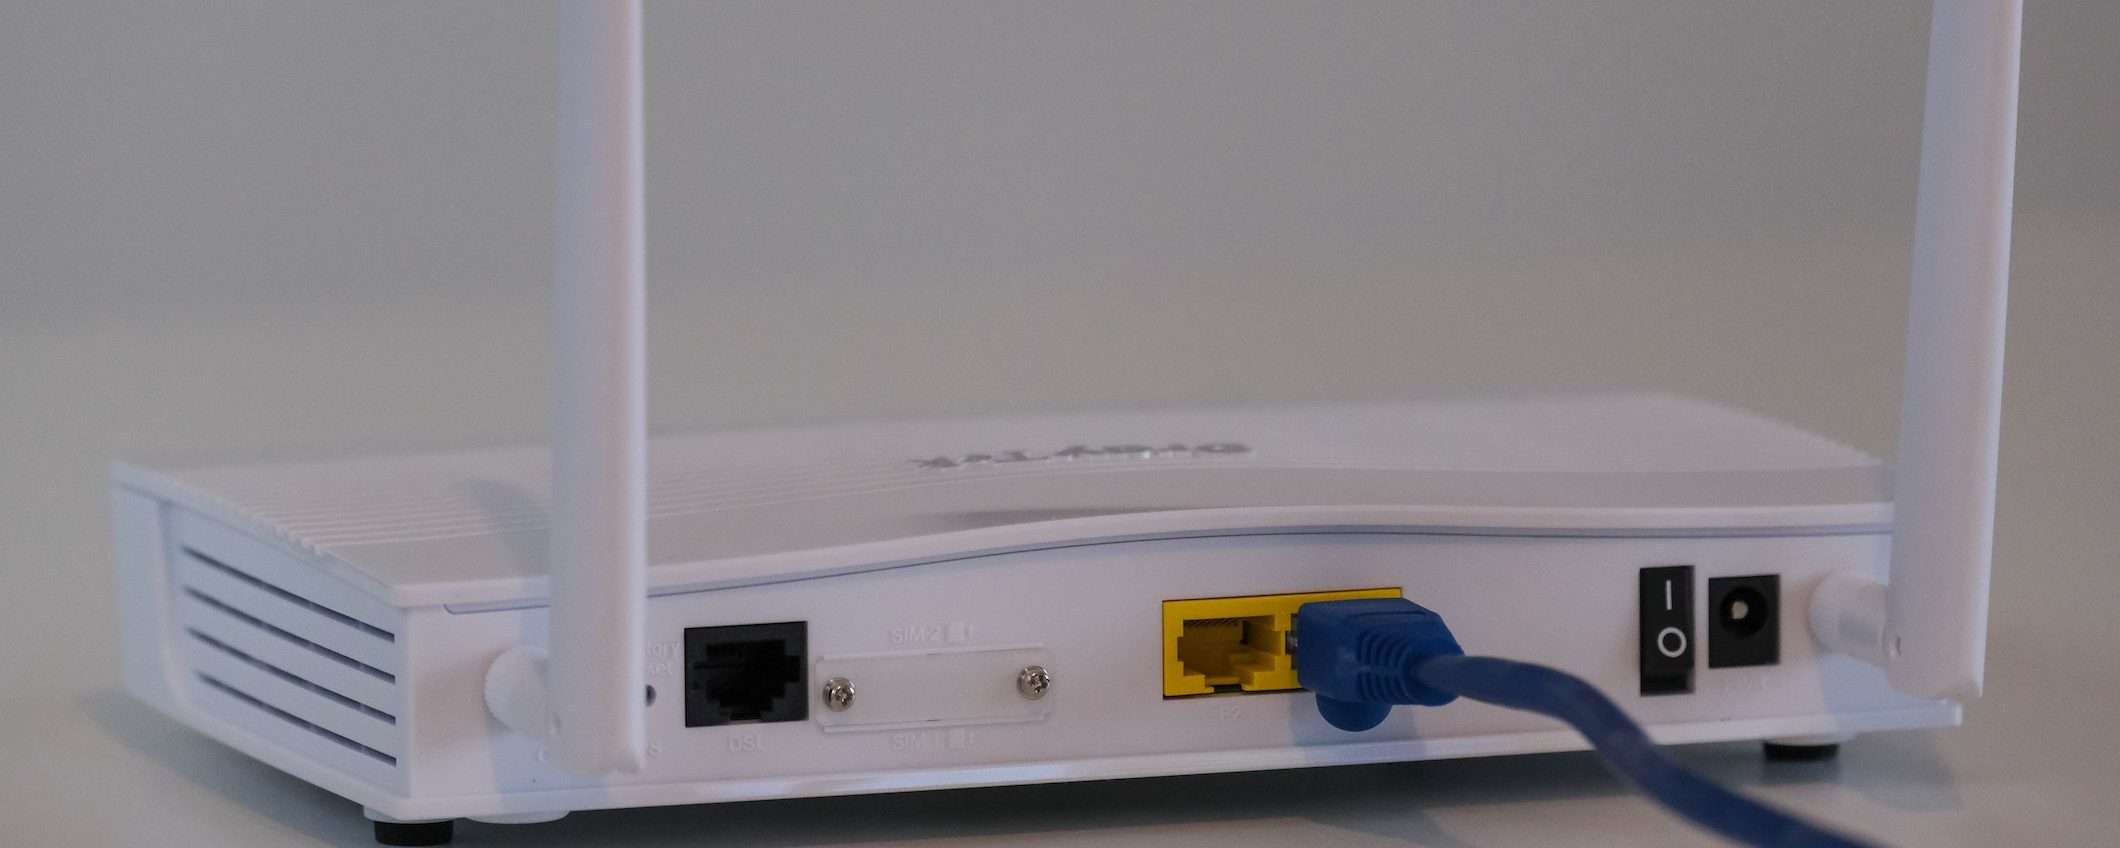 Router Wi-Fi a rischio: scovate 226 vulnerabilità